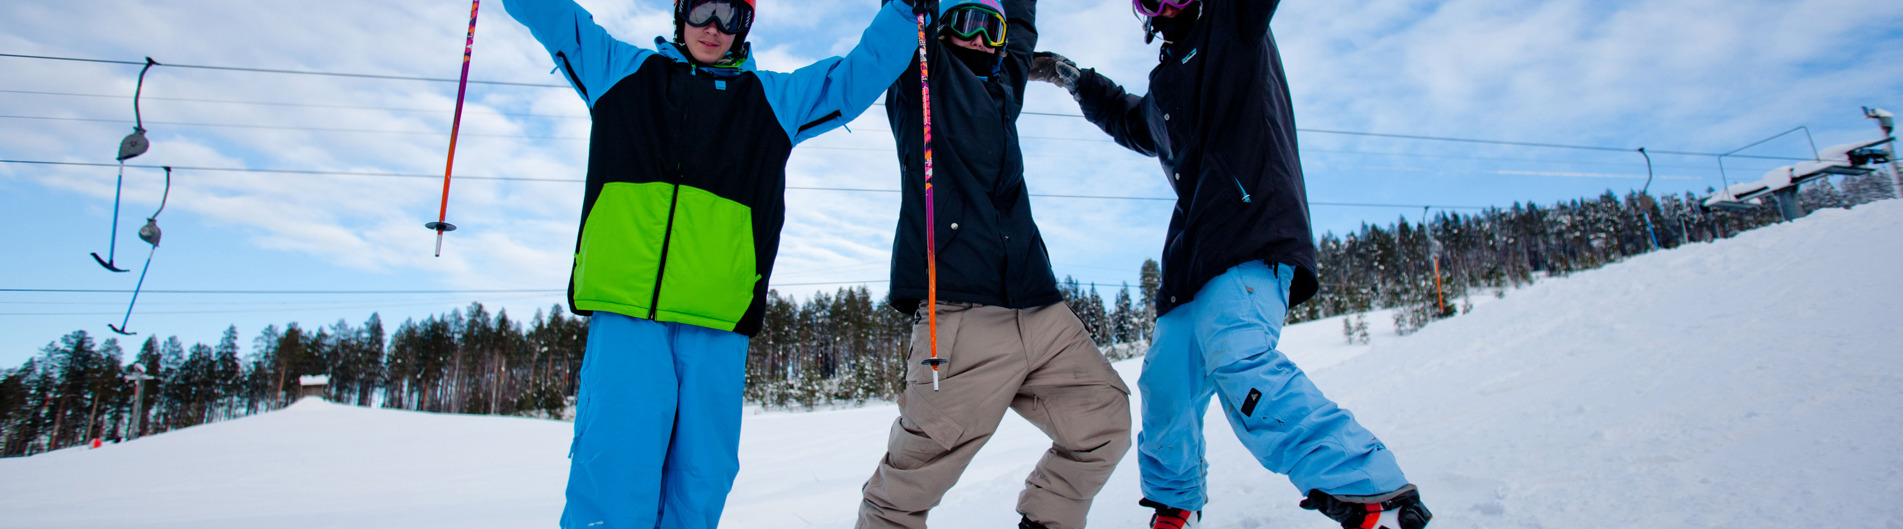 Tre personer i backen som sträcker armarna upp i luften. Har på sig slalomskidor, hjälmar och håller stavar i händerna.